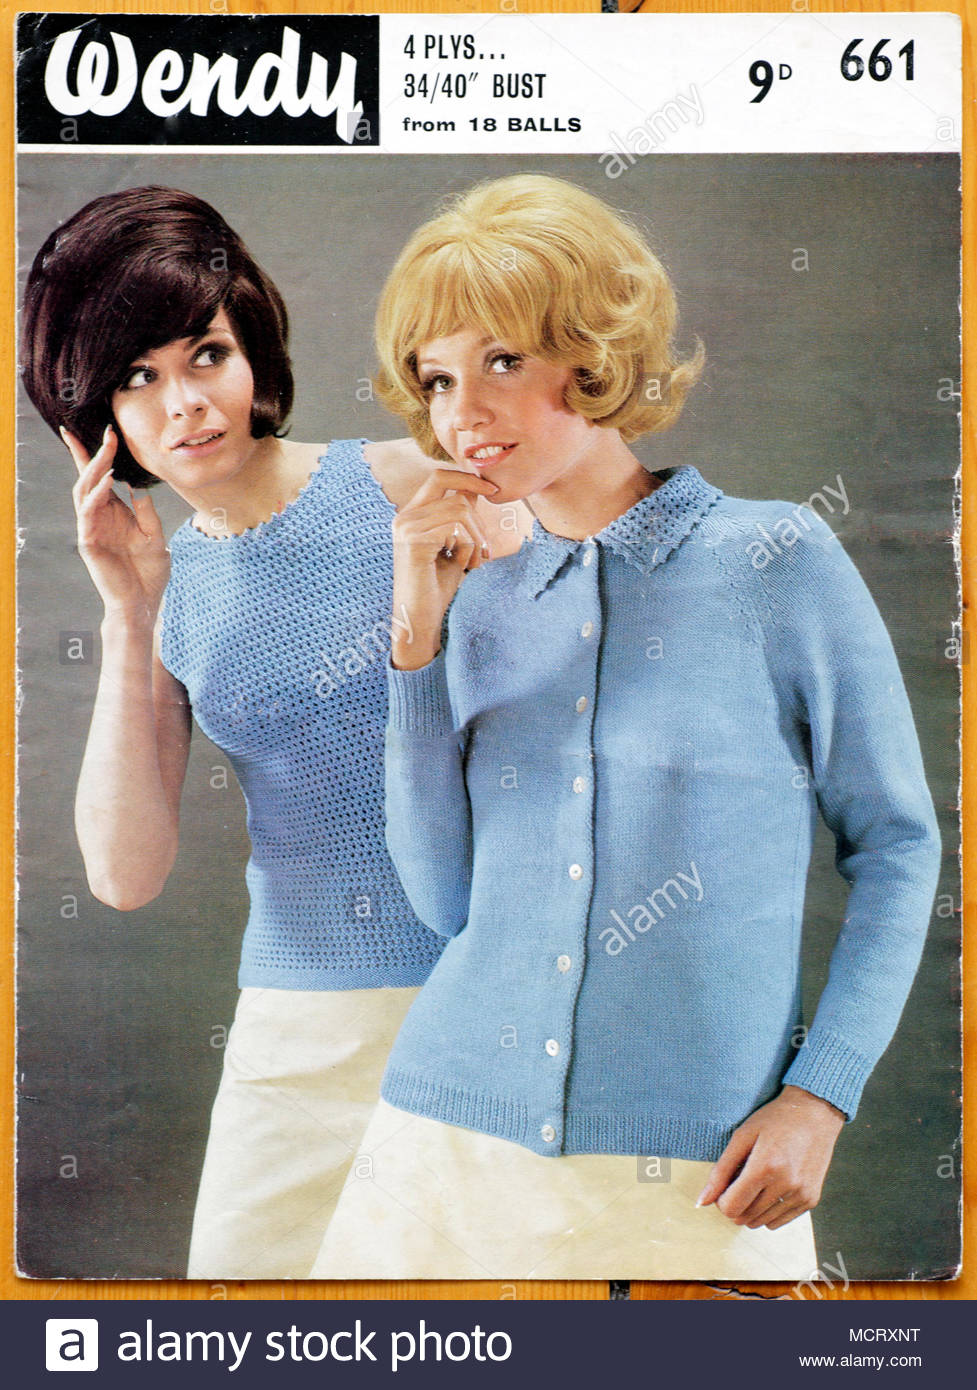 Wendy Knitting pattern 1960s Stock Photo